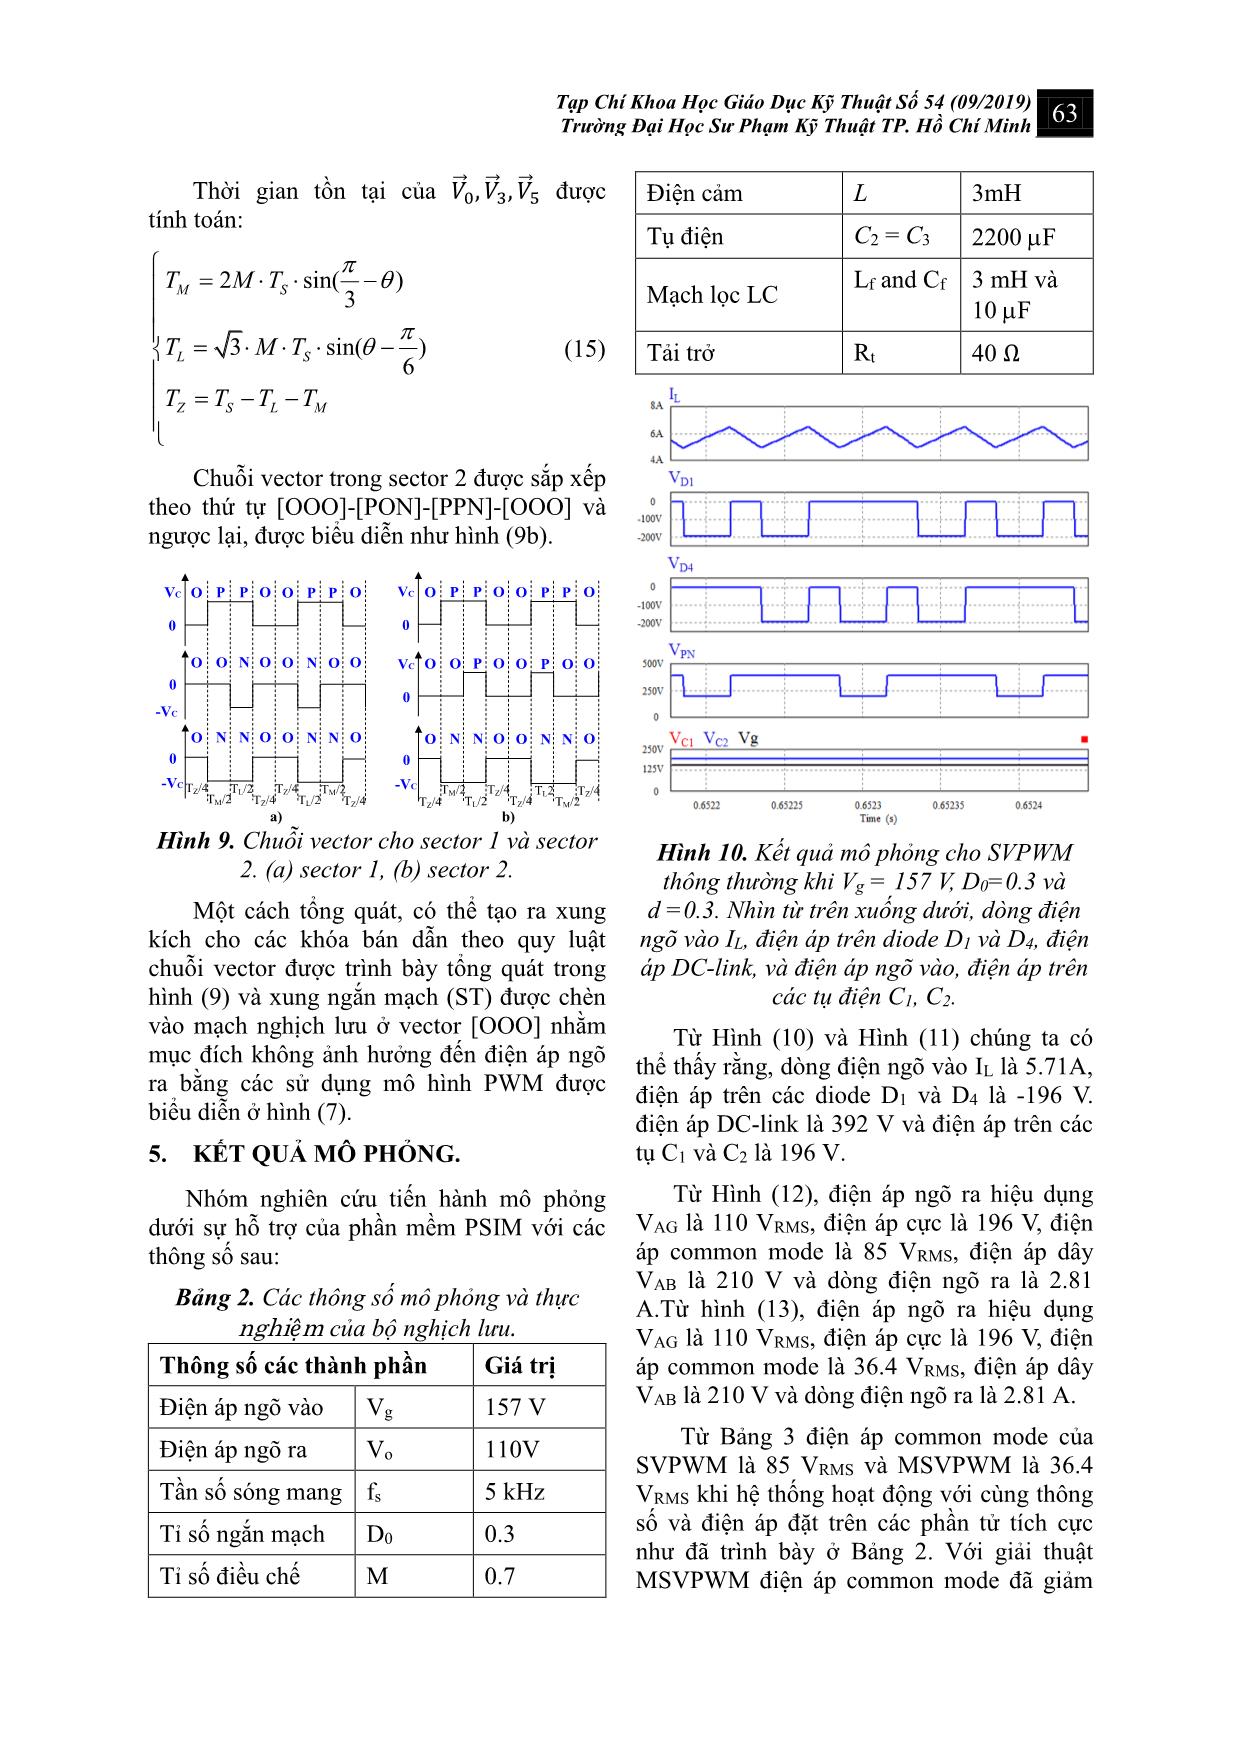 Kỹ thuật vector không gian cải tiến cho nghịch lưu hình t ba bậc để giảm điện áp common mode trang 6